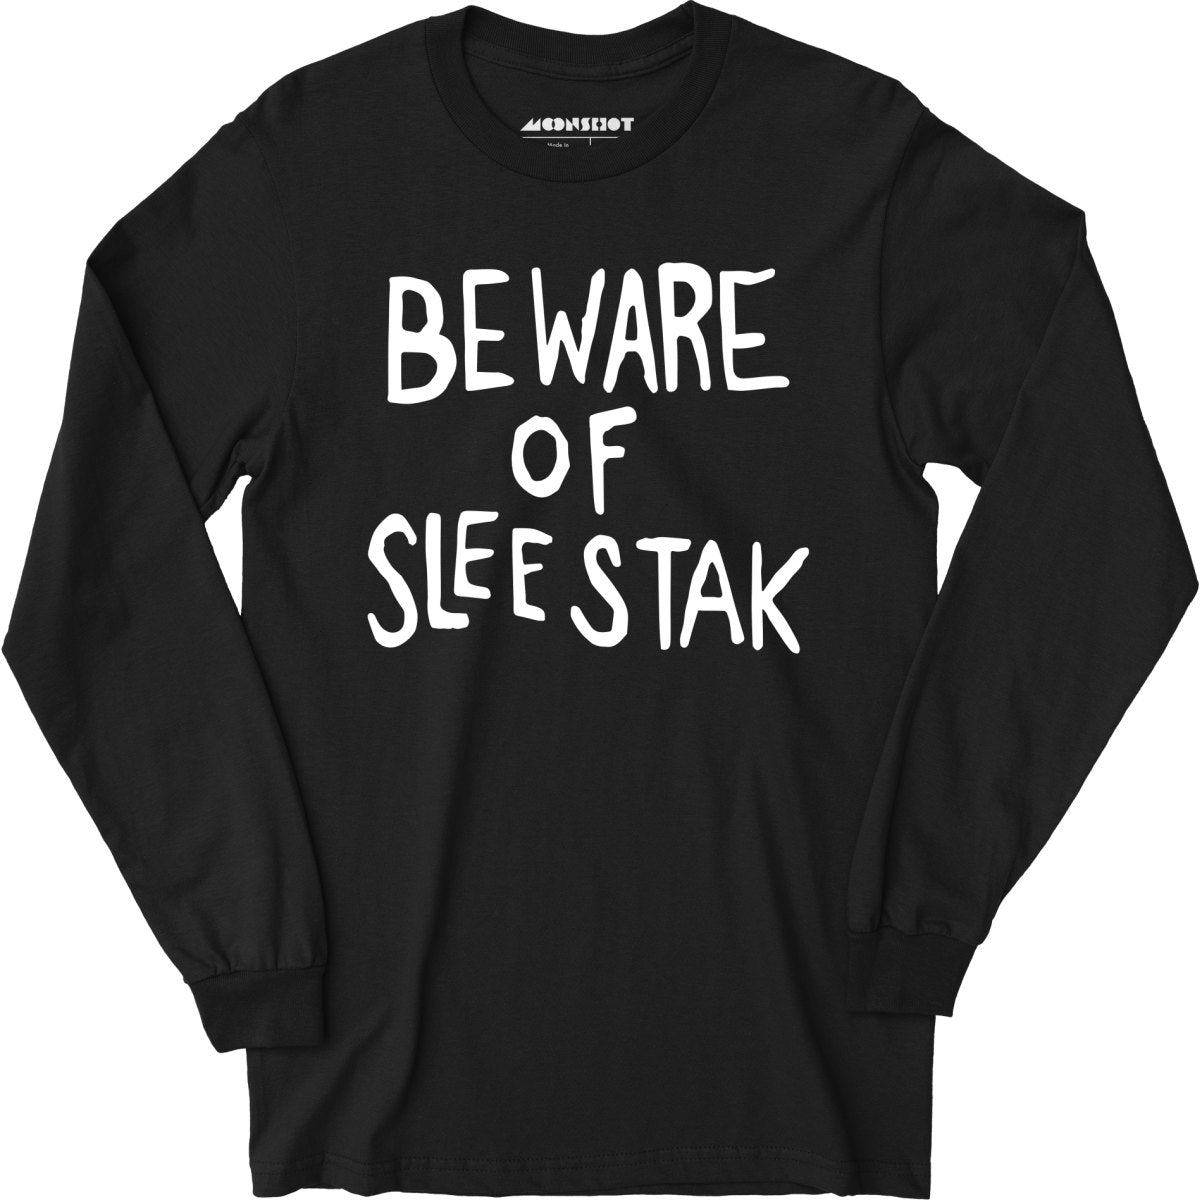 Beware of Sleestak - Long Sleeve T-Shirt